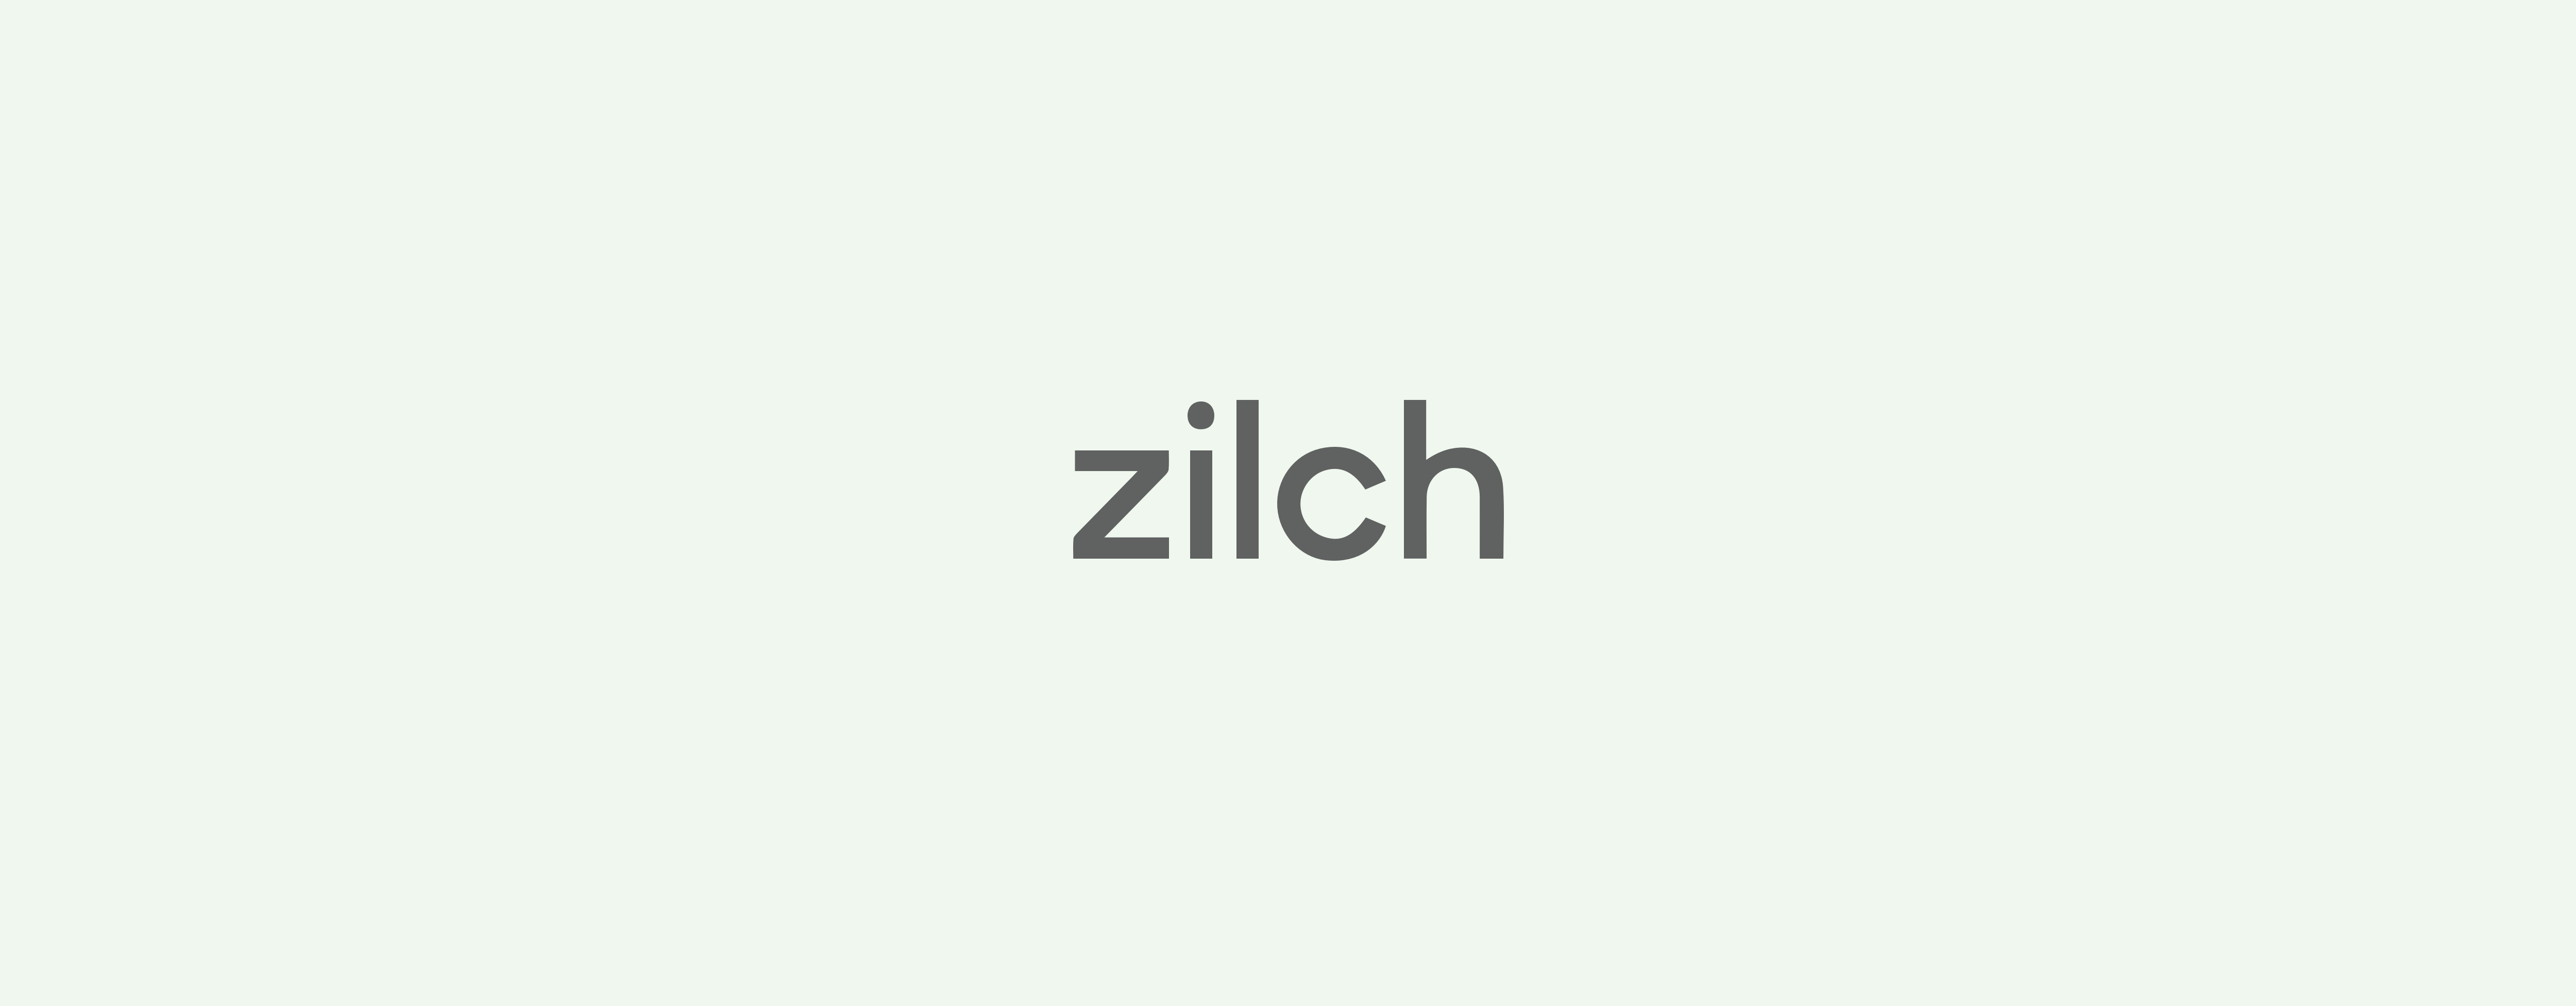 Zilch Logo Brand Designer